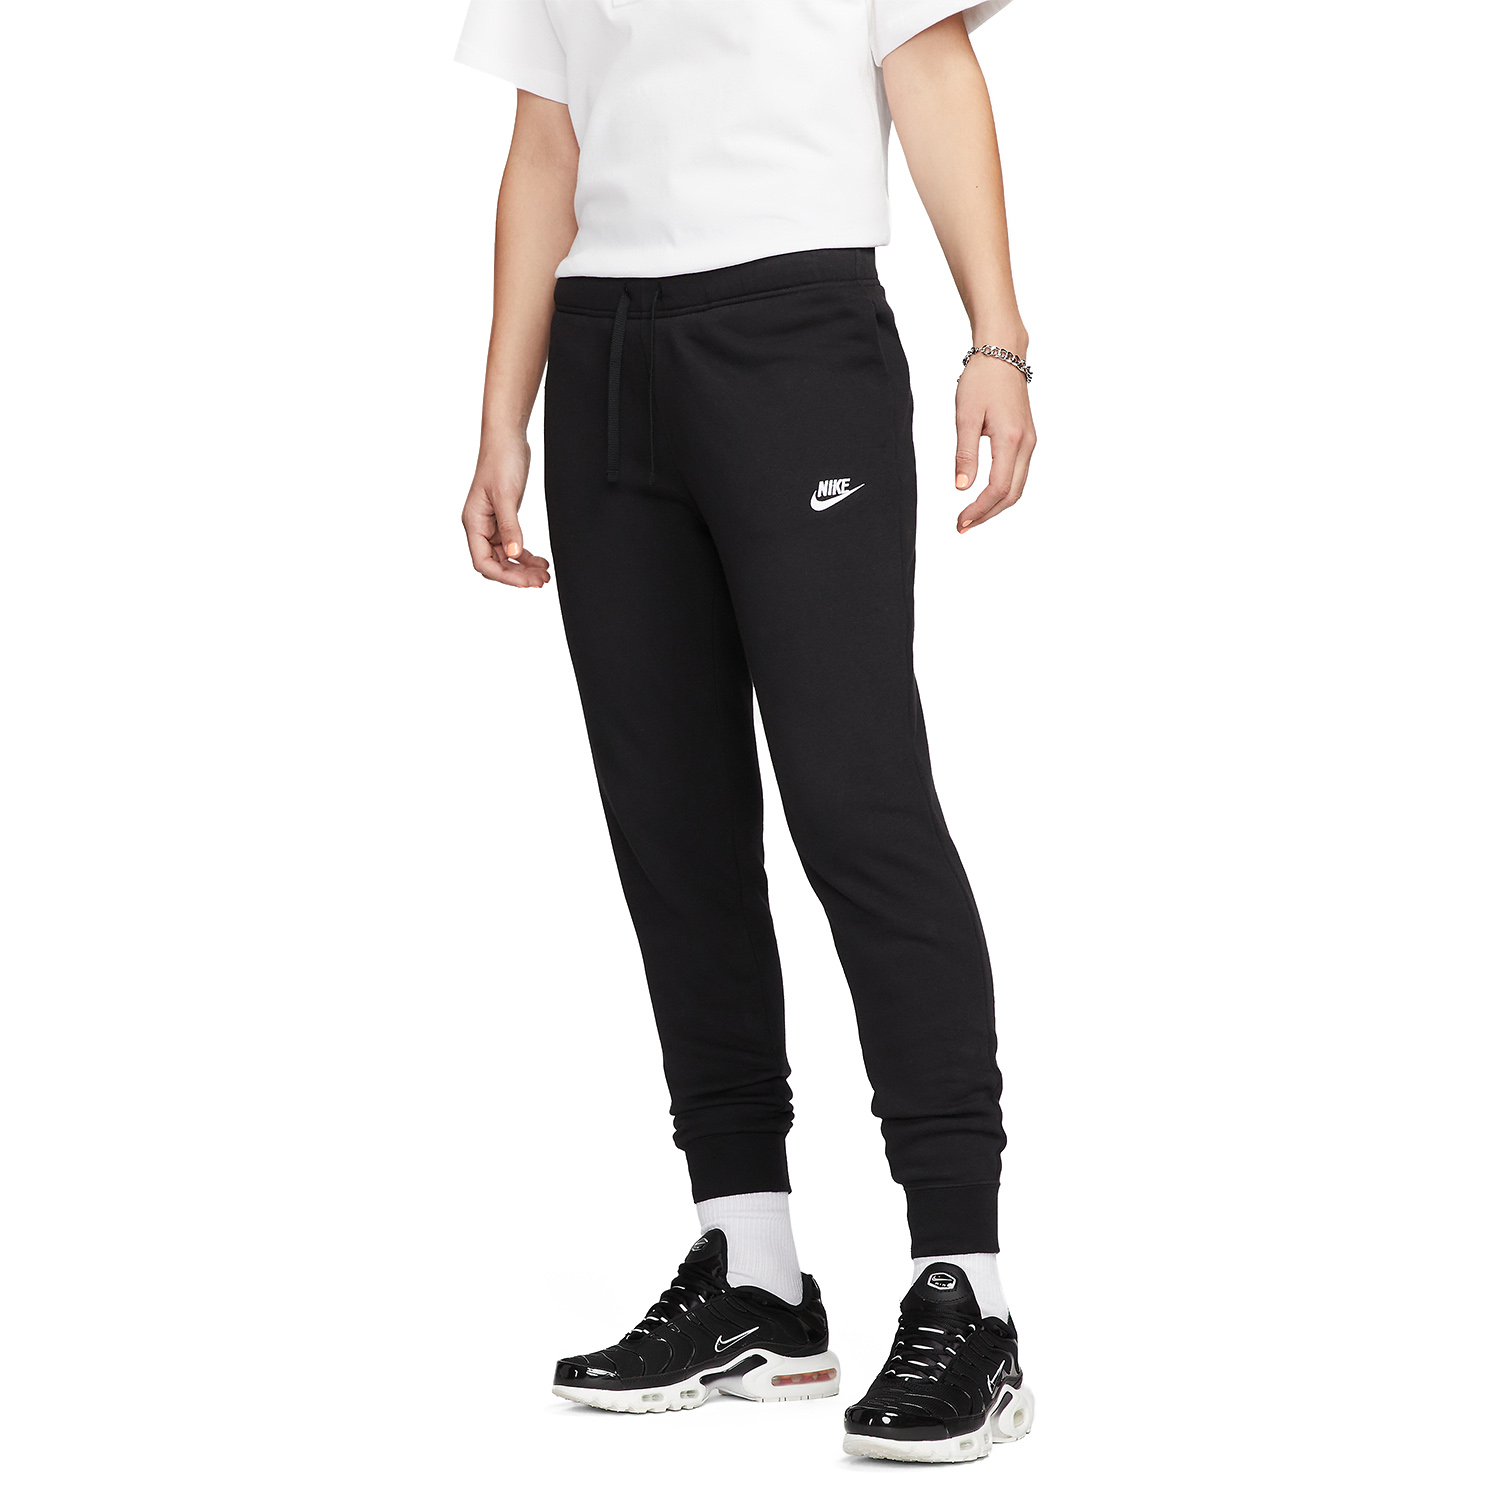 Nike Club Women's Tennis Pants - Black/White